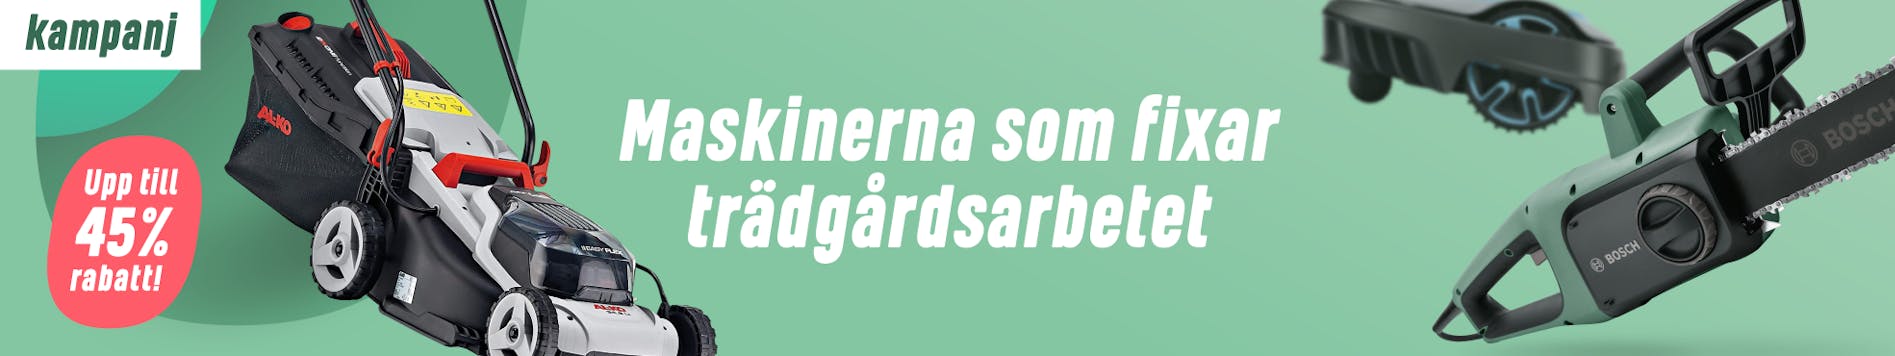 https://www.proffsmagasinet.se/tradgardsmaskiner-kampanj